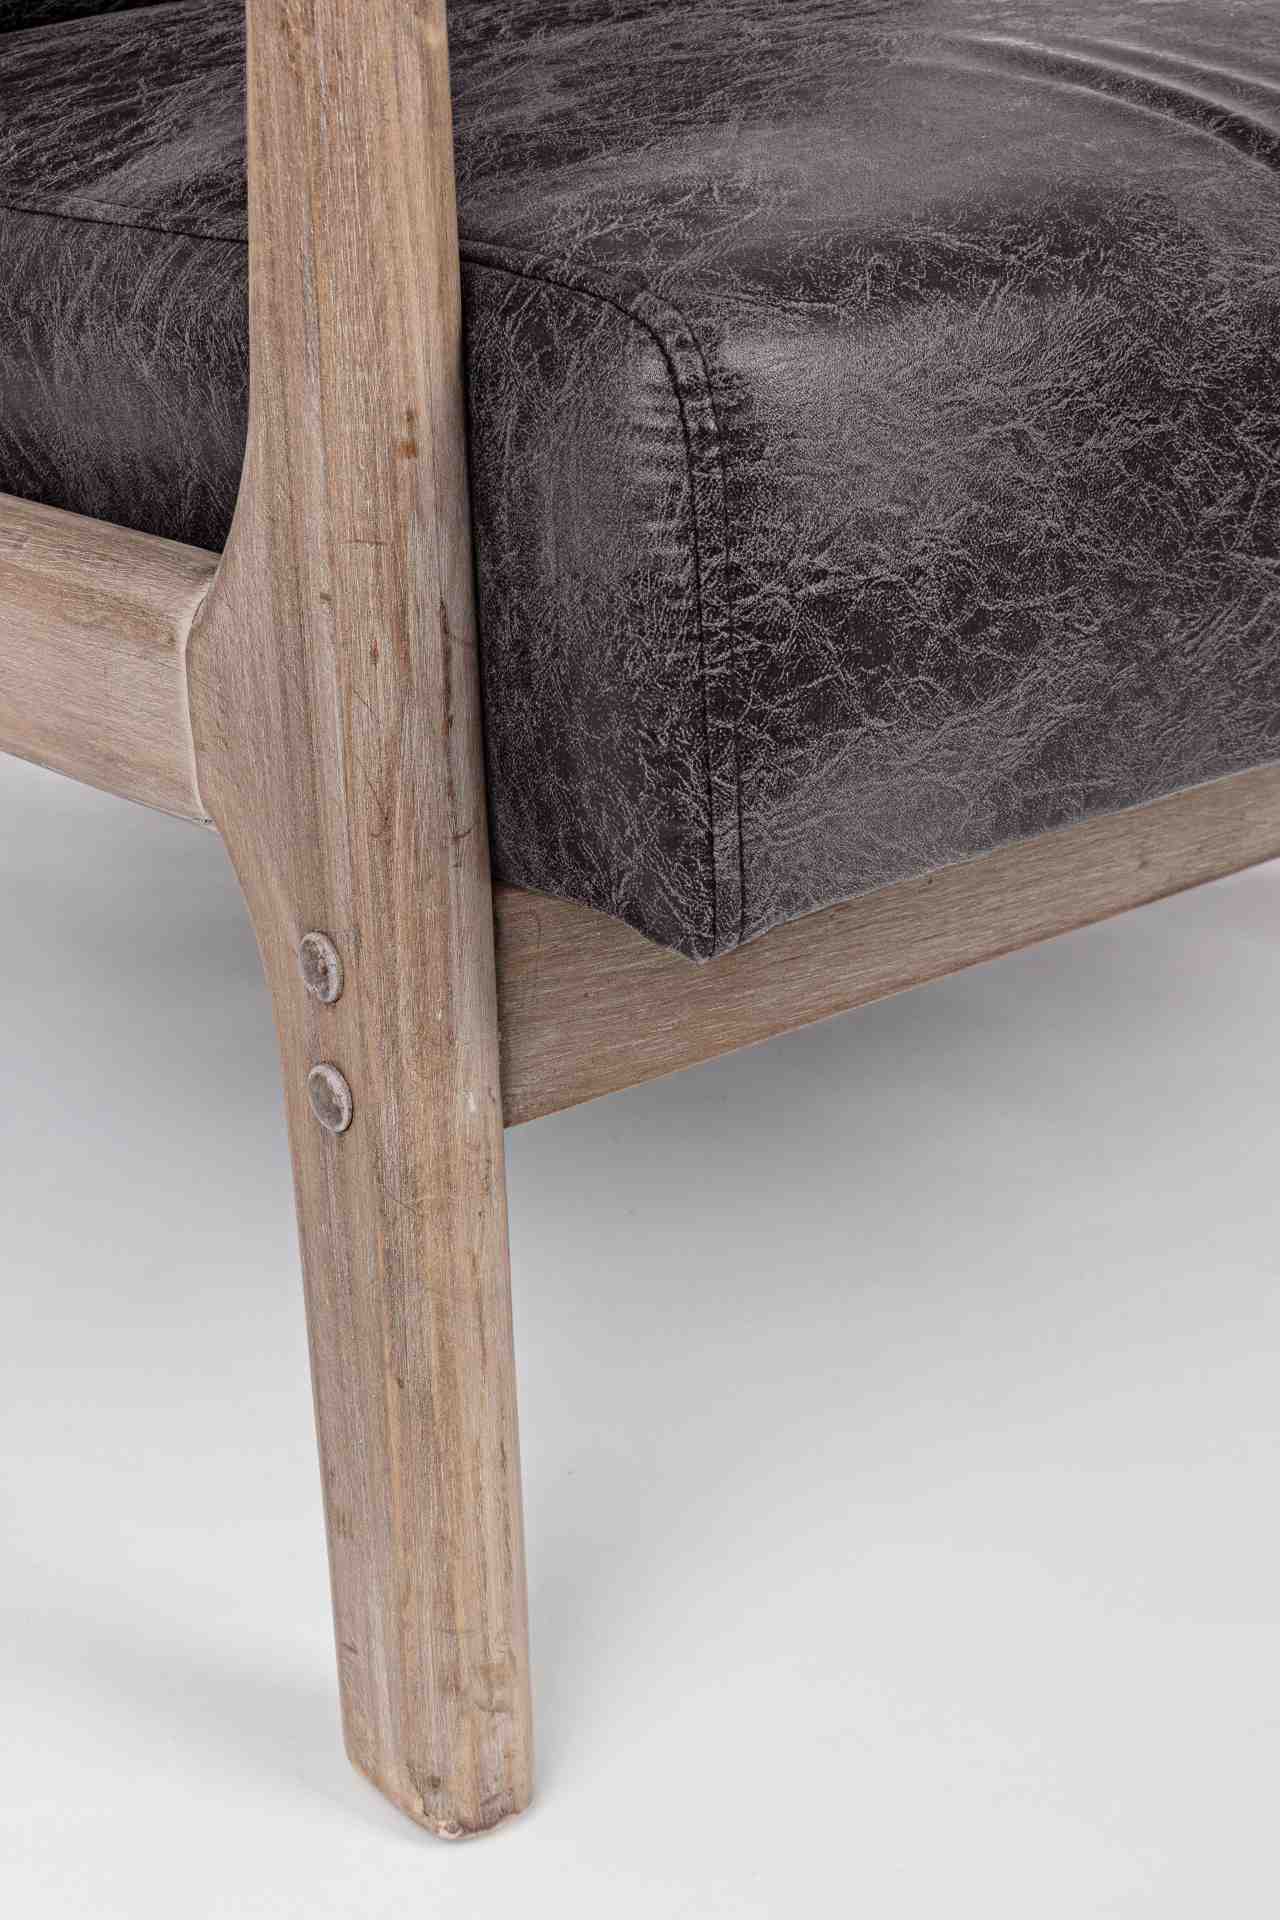 Der Sessel Ancilla überzeugt mit seinem klassischen Design. Gefertigt wurde er aus Stoff, welcher einen braunen Farbton besitzt. Das Gestell ist aus Kautschukholz und hat eine natürliche Farbe. Der Sessel besitzt eine Sitzhöhe von 34 cm. Die Breite beträg